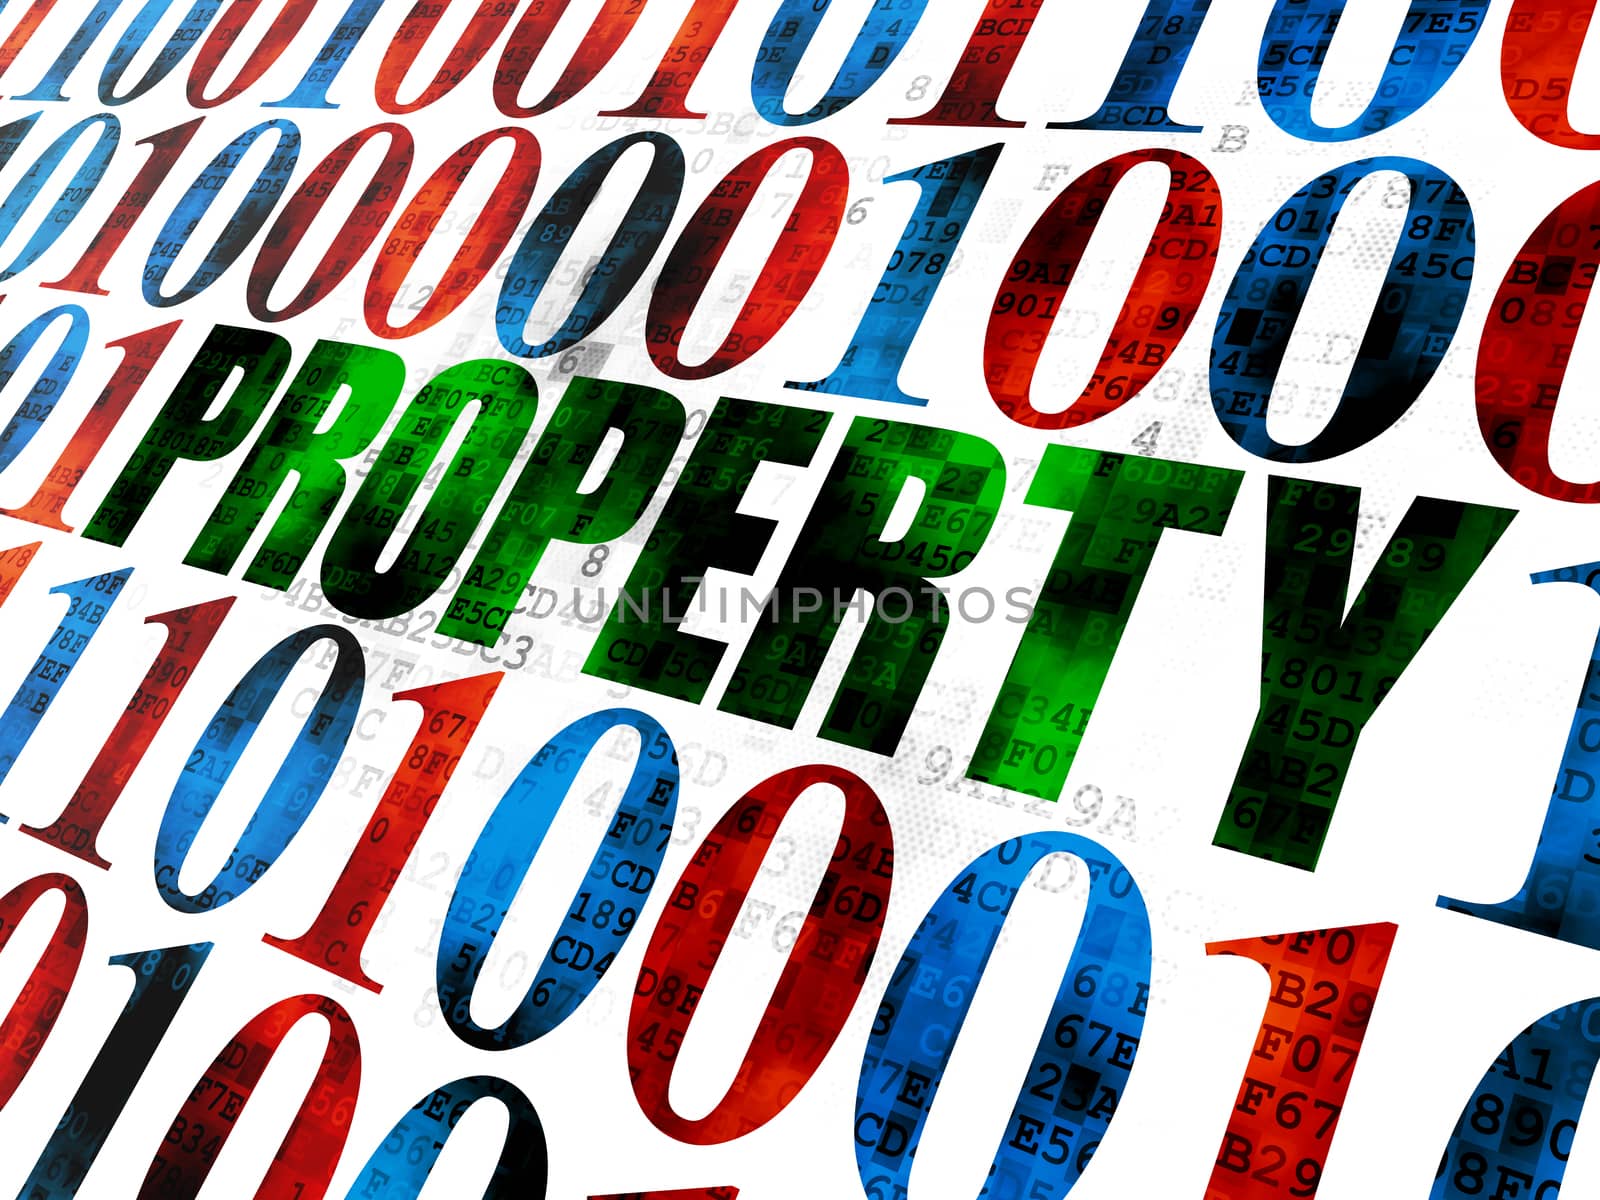 Finance concept: Property on Digital background by maxkabakov